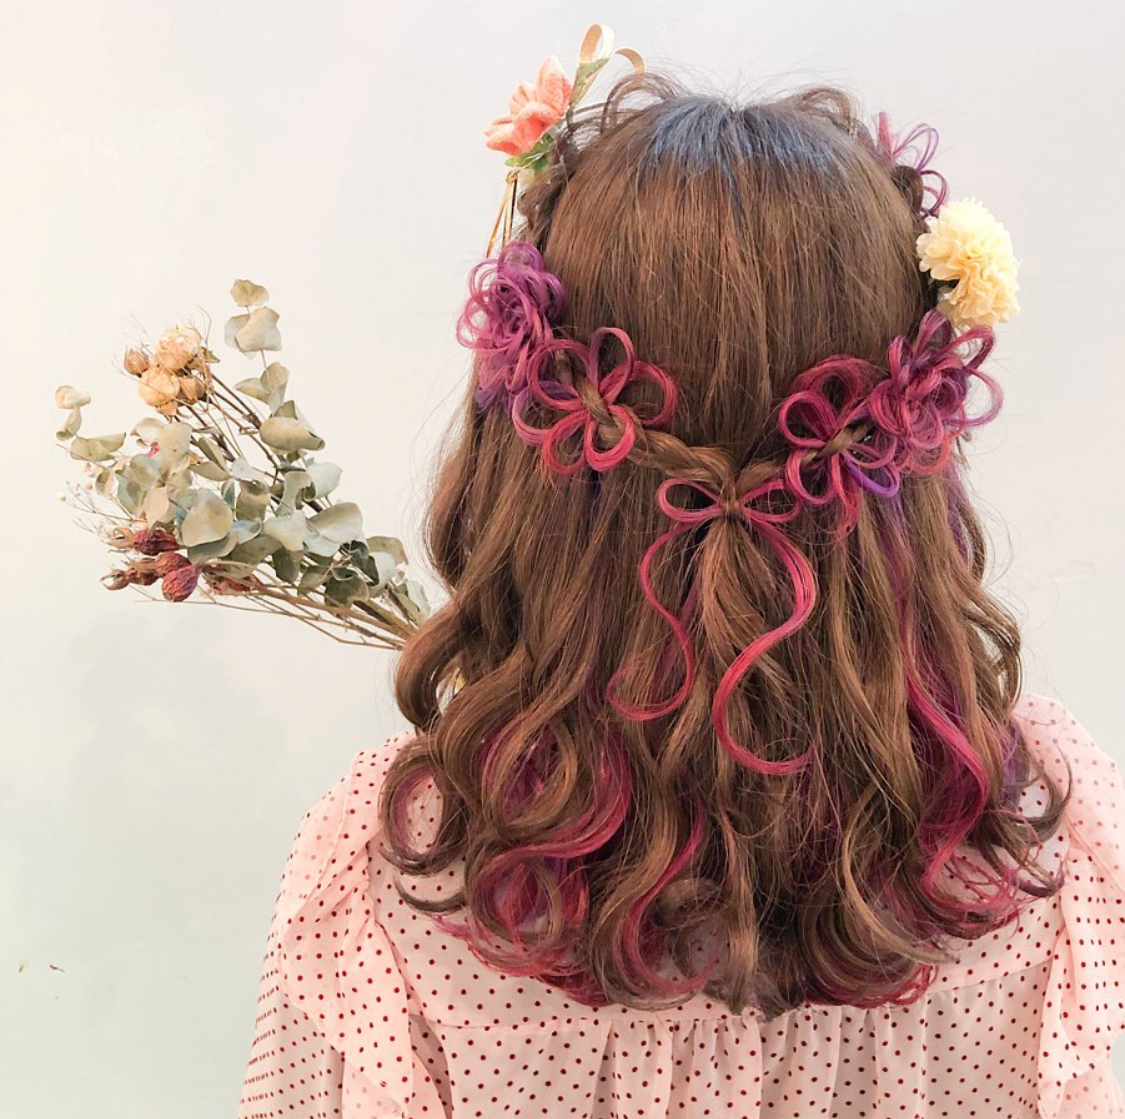 セルフアレンジに挑戦!髪にお花を咲かせるヘアアレンジ3選 - HARAJUKU POP WEB